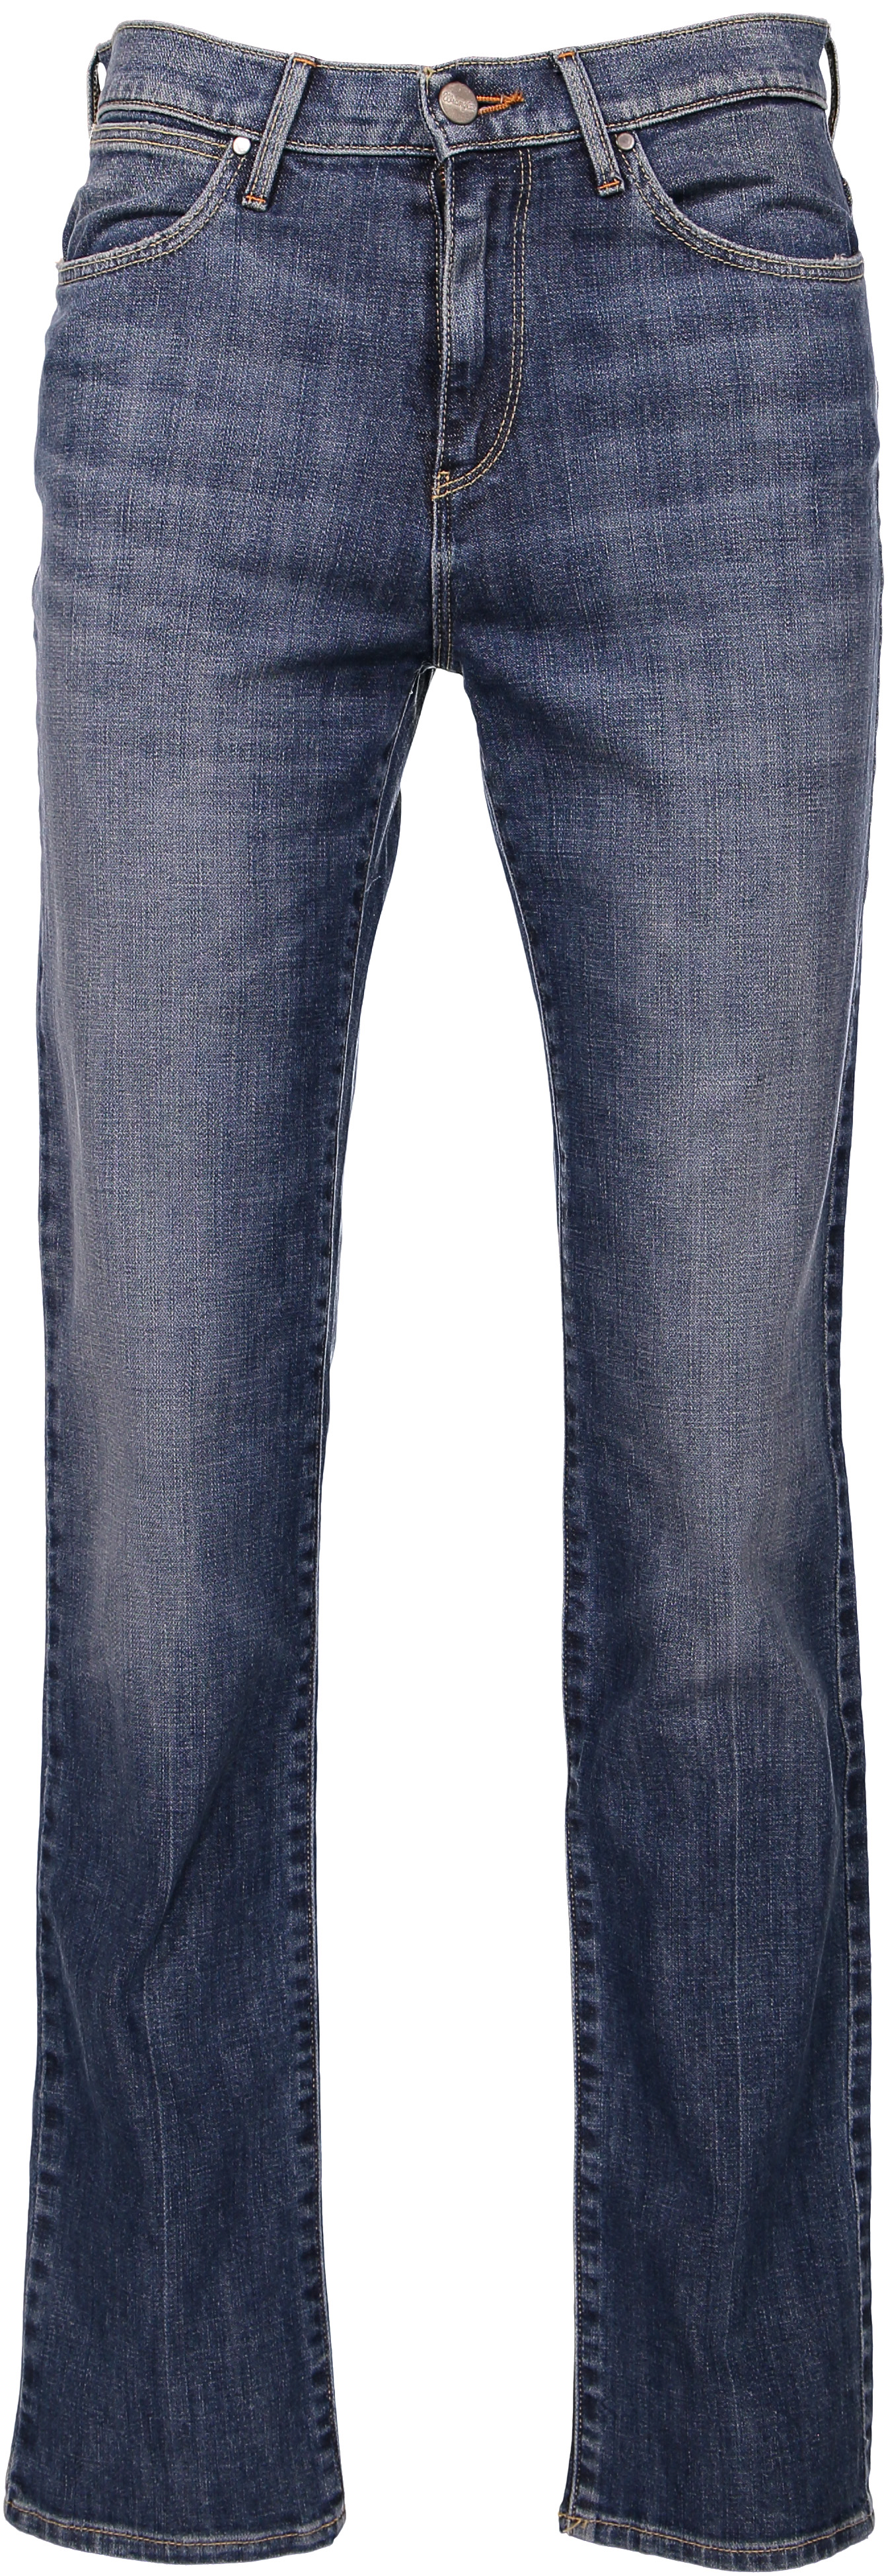 Οδηγός Αγοράς: 13 jeans που πρέπει οπωσδήποτε να αποκτήσεις φέτος την άνοιξη